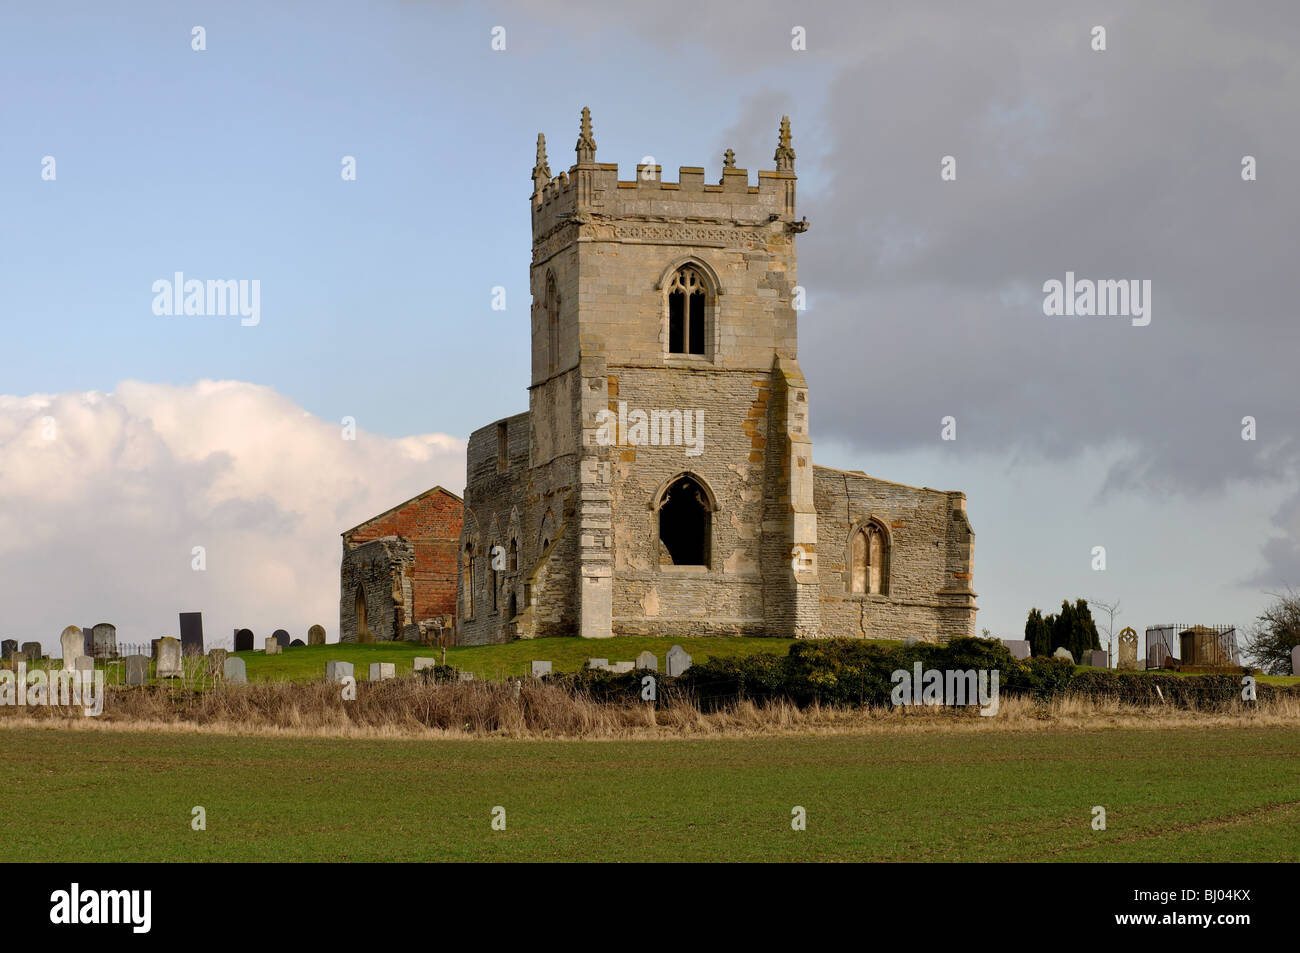 L'ancienne église de Sainte Marie, Colston Bassett, Lancashire, England, UK Banque D'Images